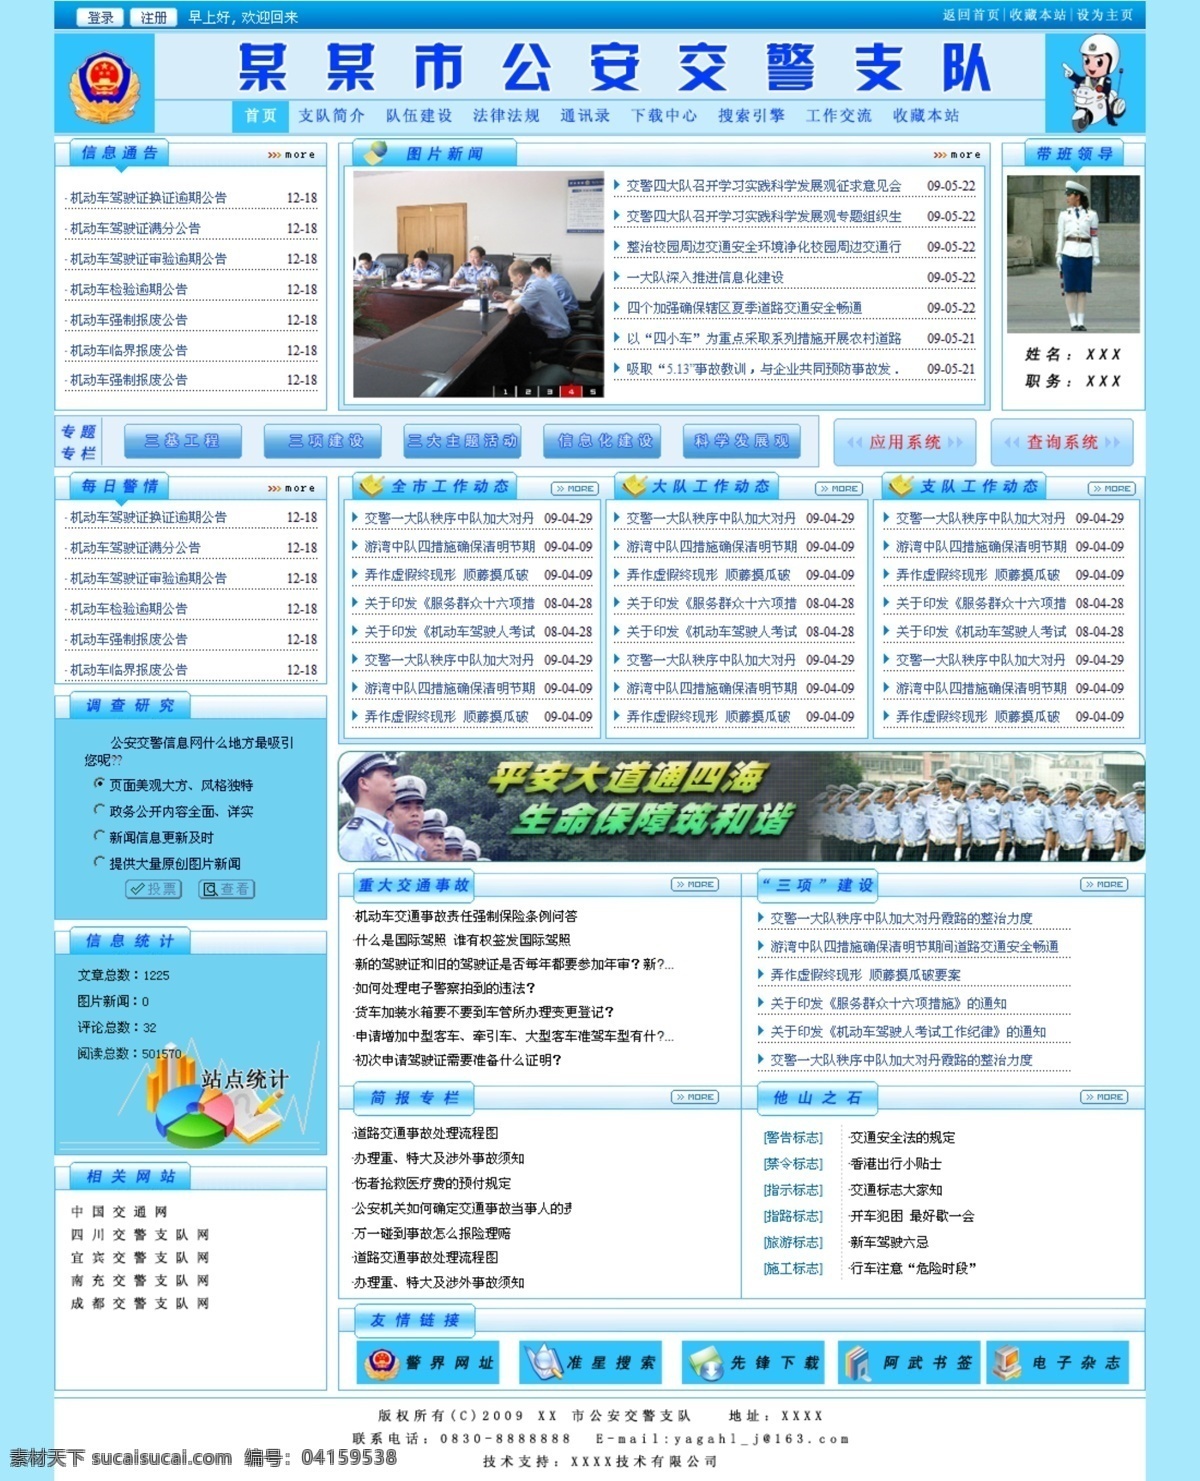 交警 支队 网页 效果图 蓝色 网页模板 网页效果图 源文件库 中文模版 网页素材